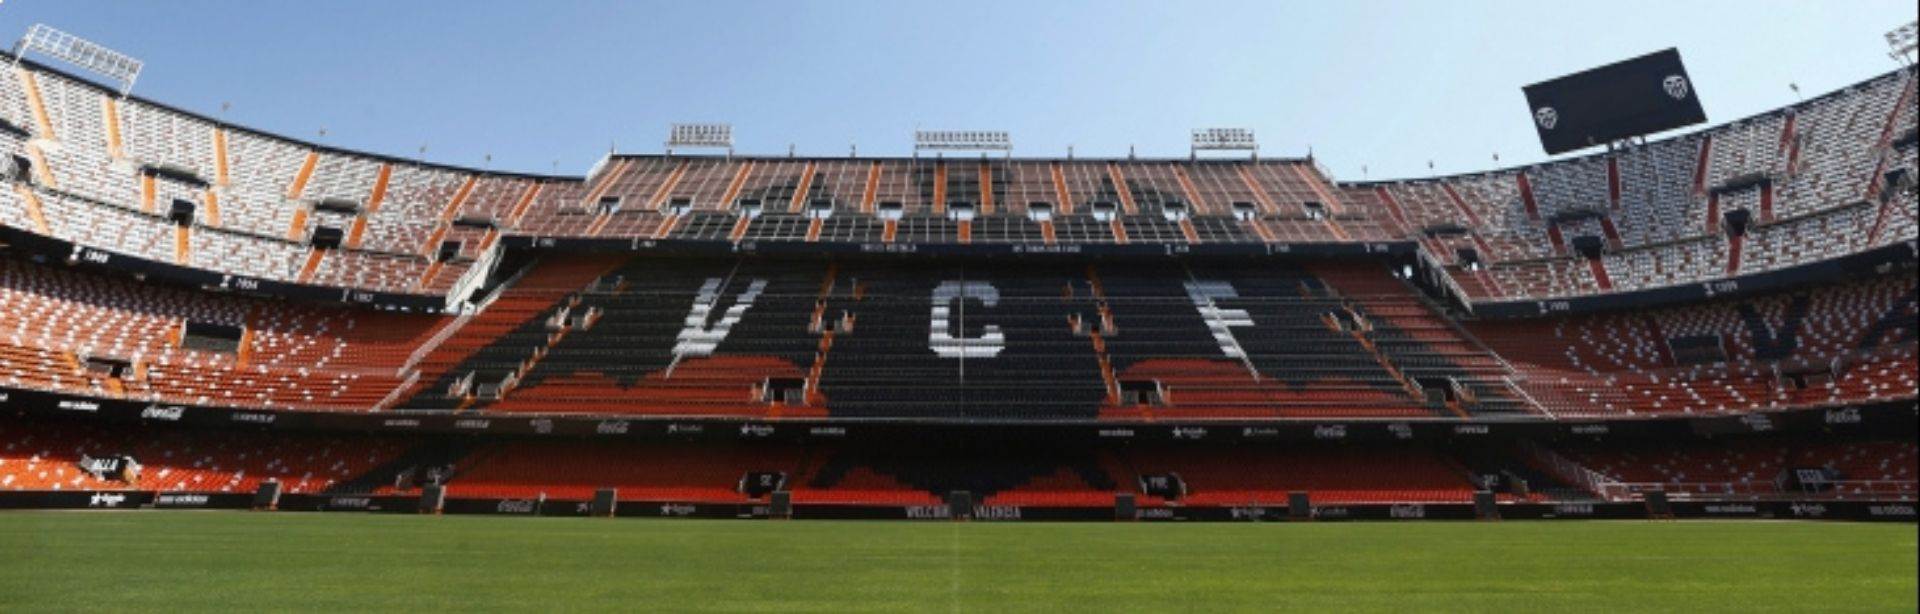 Valencia's home ground, Mestalla, will be empty in